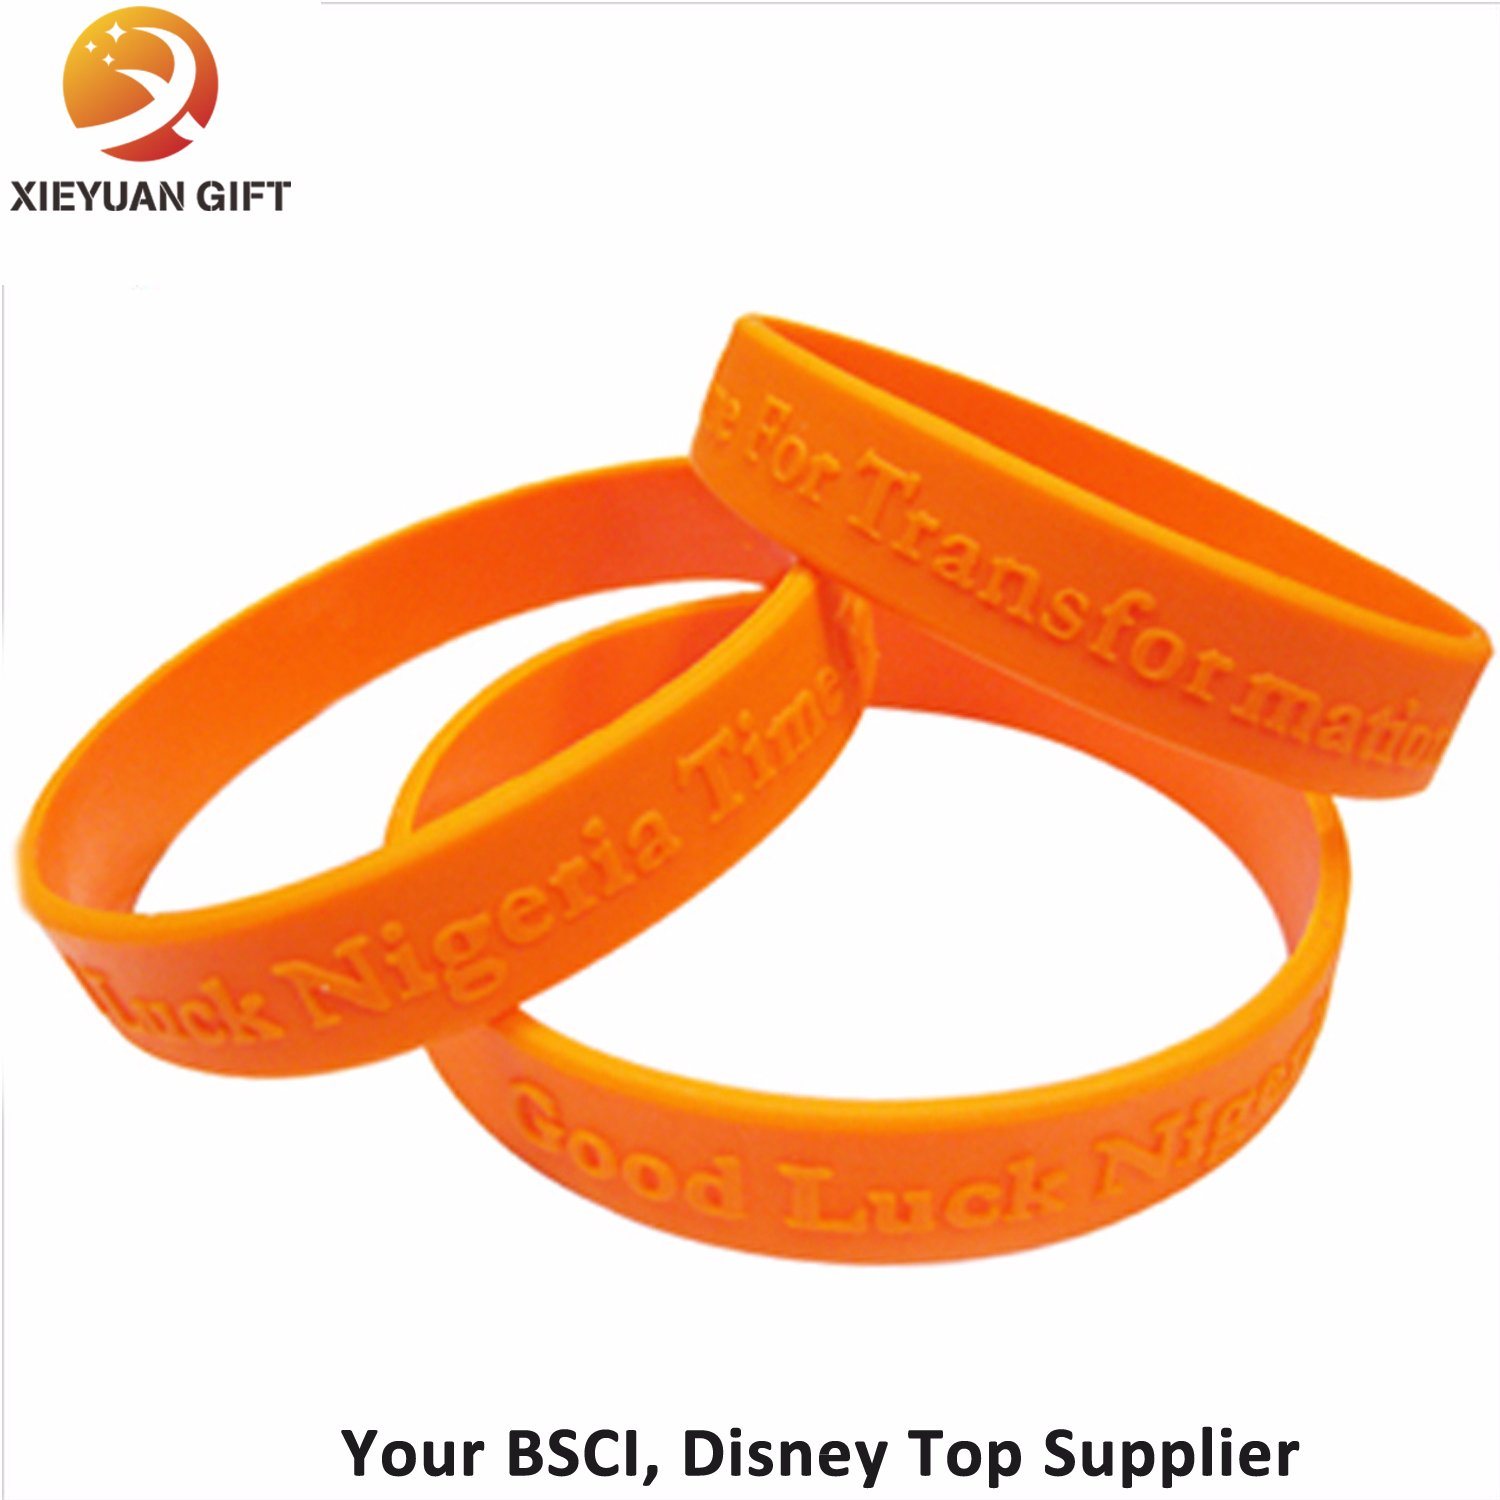 Color anaranjado de los Wristbands de encargo del silicón hecho en China